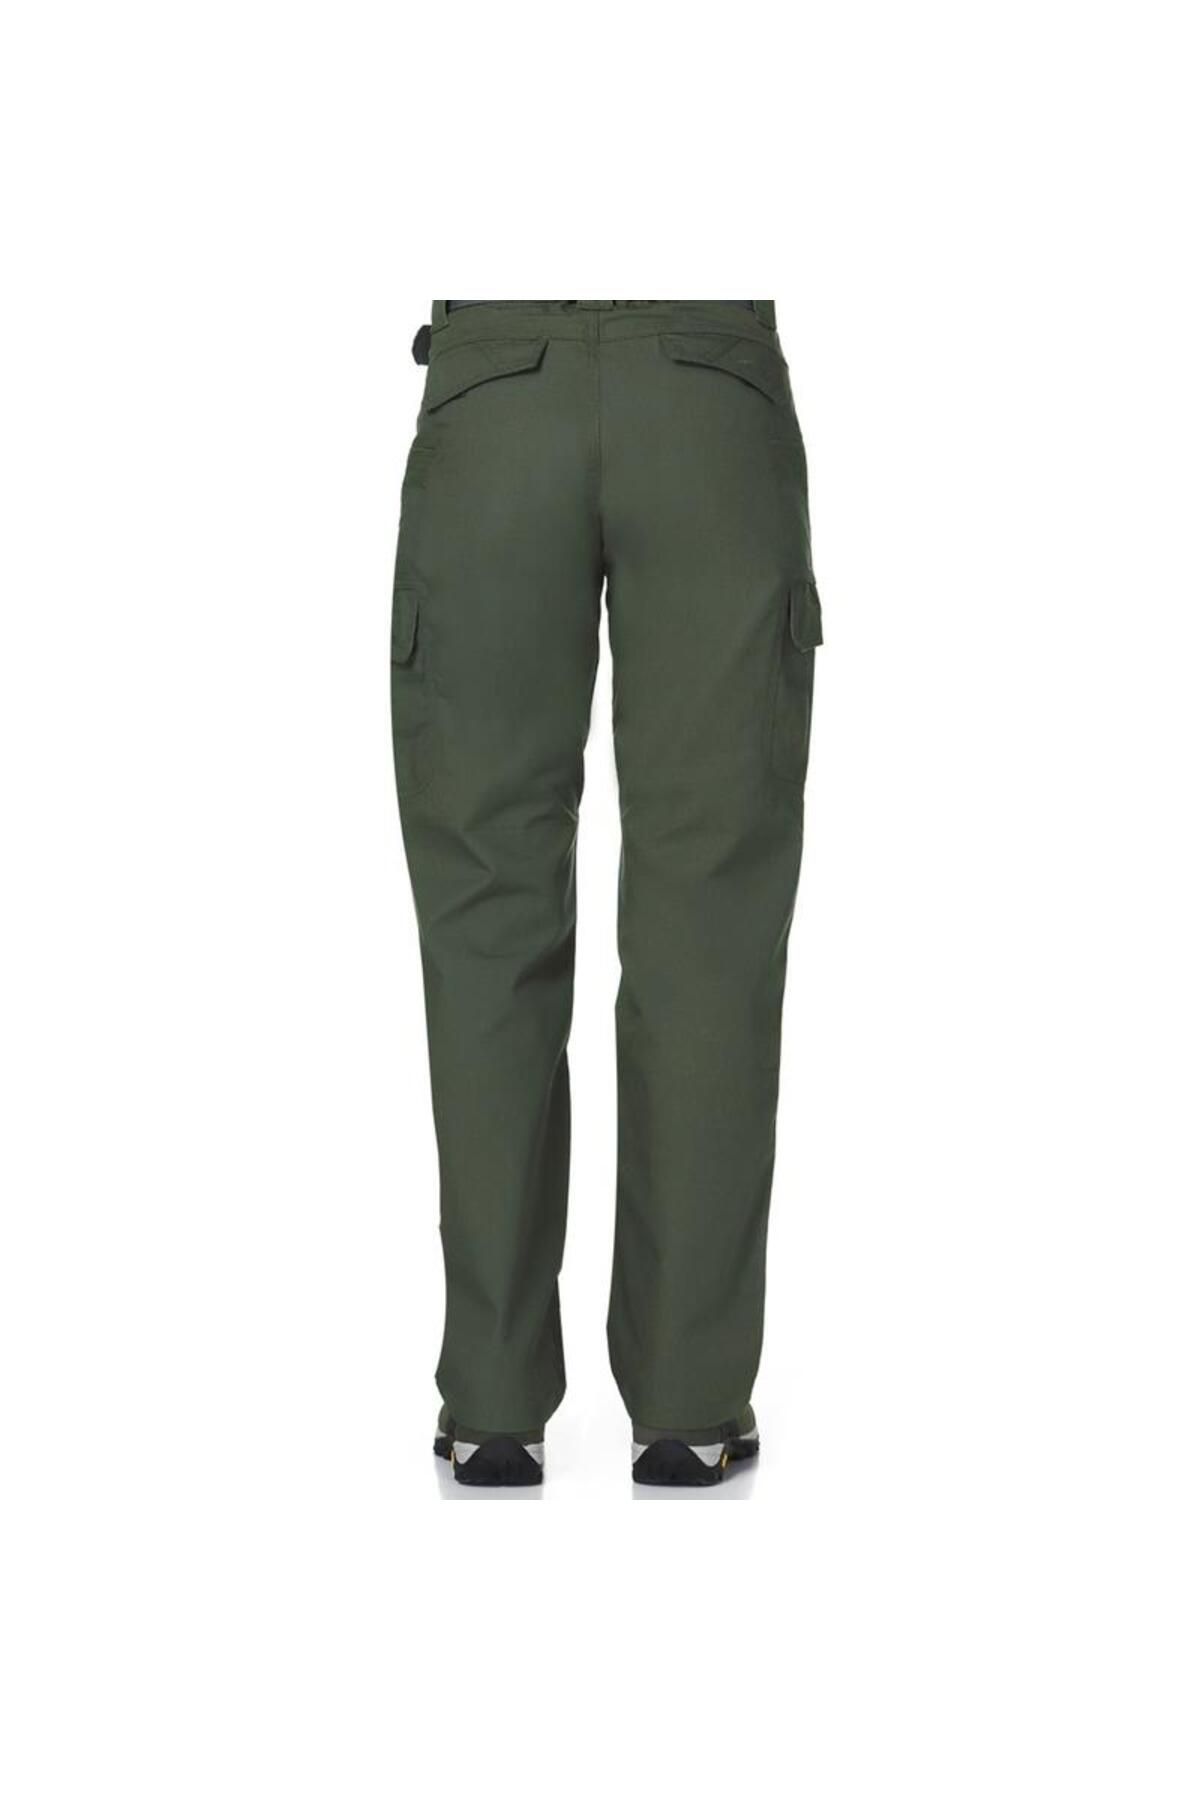 Evolite E-3123 - Goldrush Tactical Kadın Pantolon